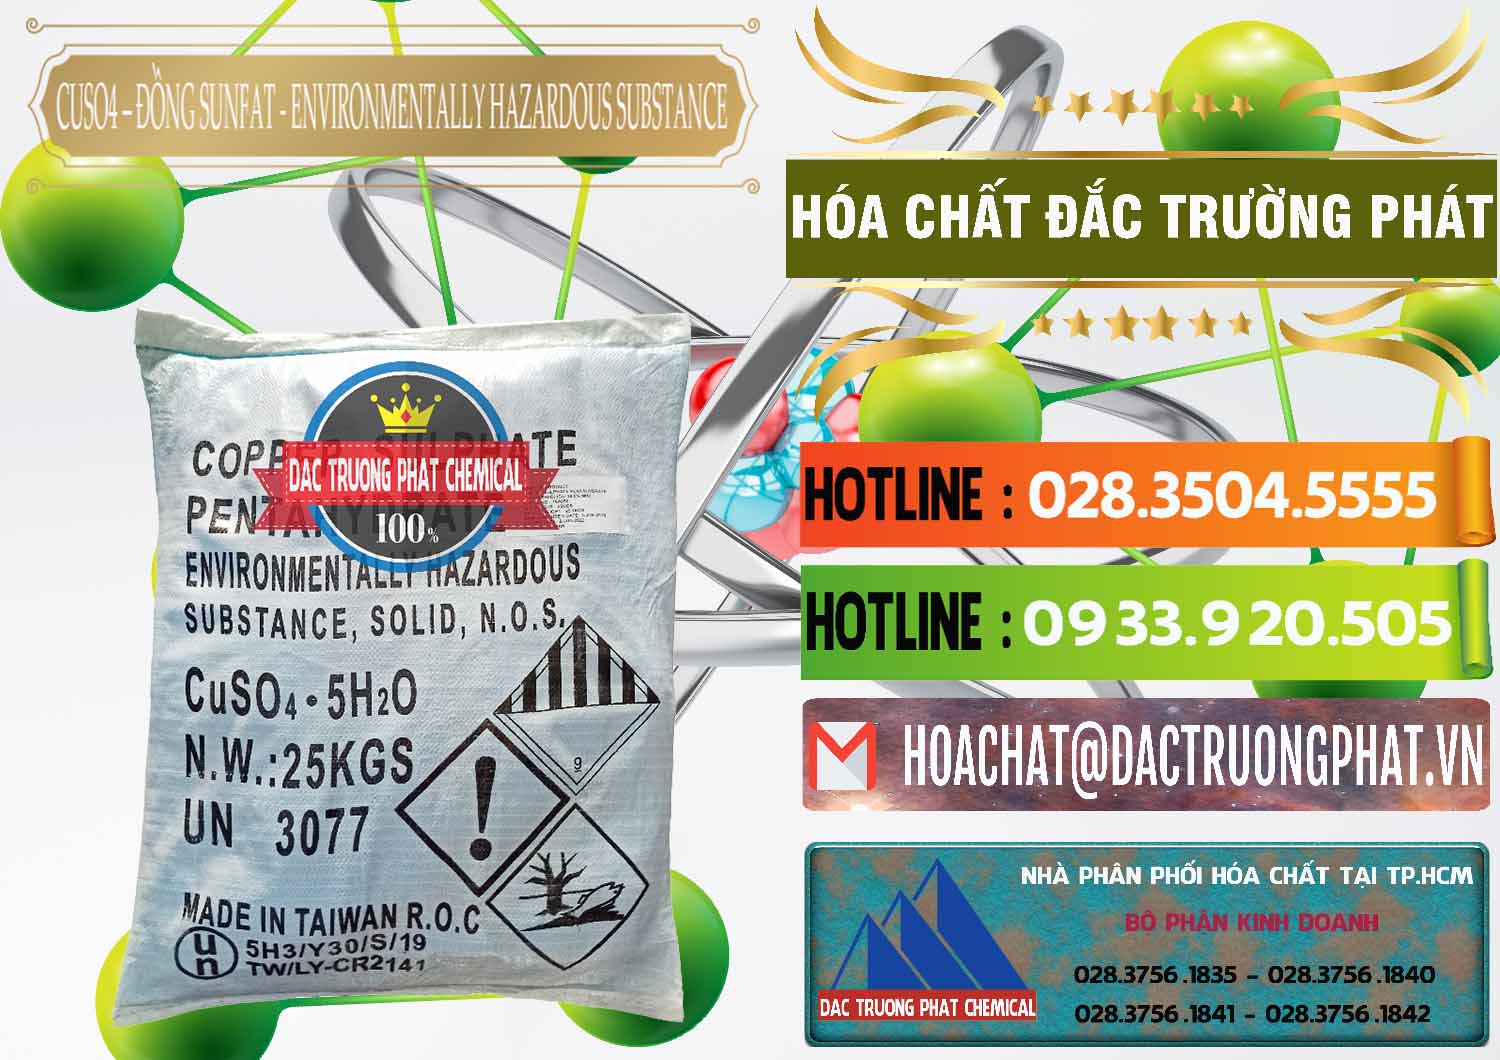 Nơi bán ( cung cấp ) CuSO4 – Đồng Sunfat Đài Loan Taiwan - 0059 - Cty phân phối và kinh doanh hóa chất tại TP.HCM - cungcaphoachat.com.vn